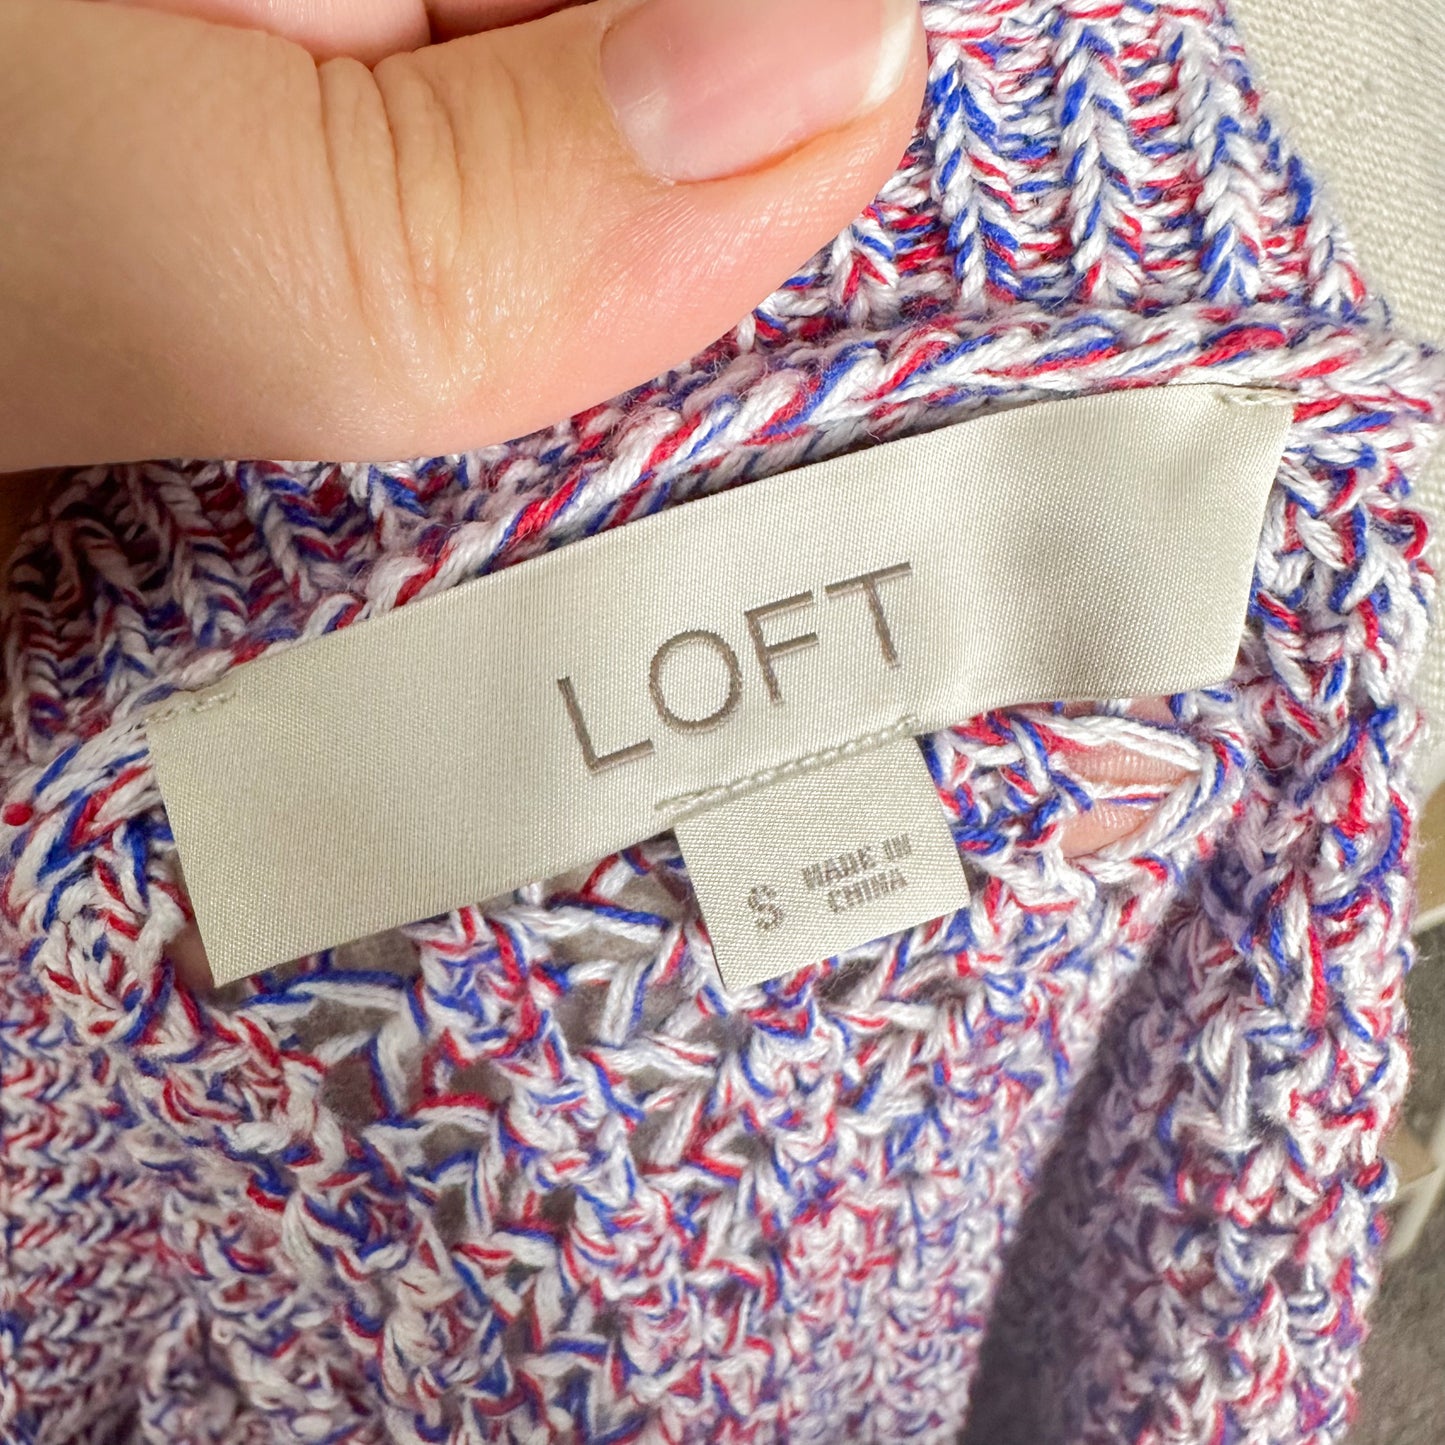 LOFT Open Stitch 3/4 Sleeve Sweater Size Small